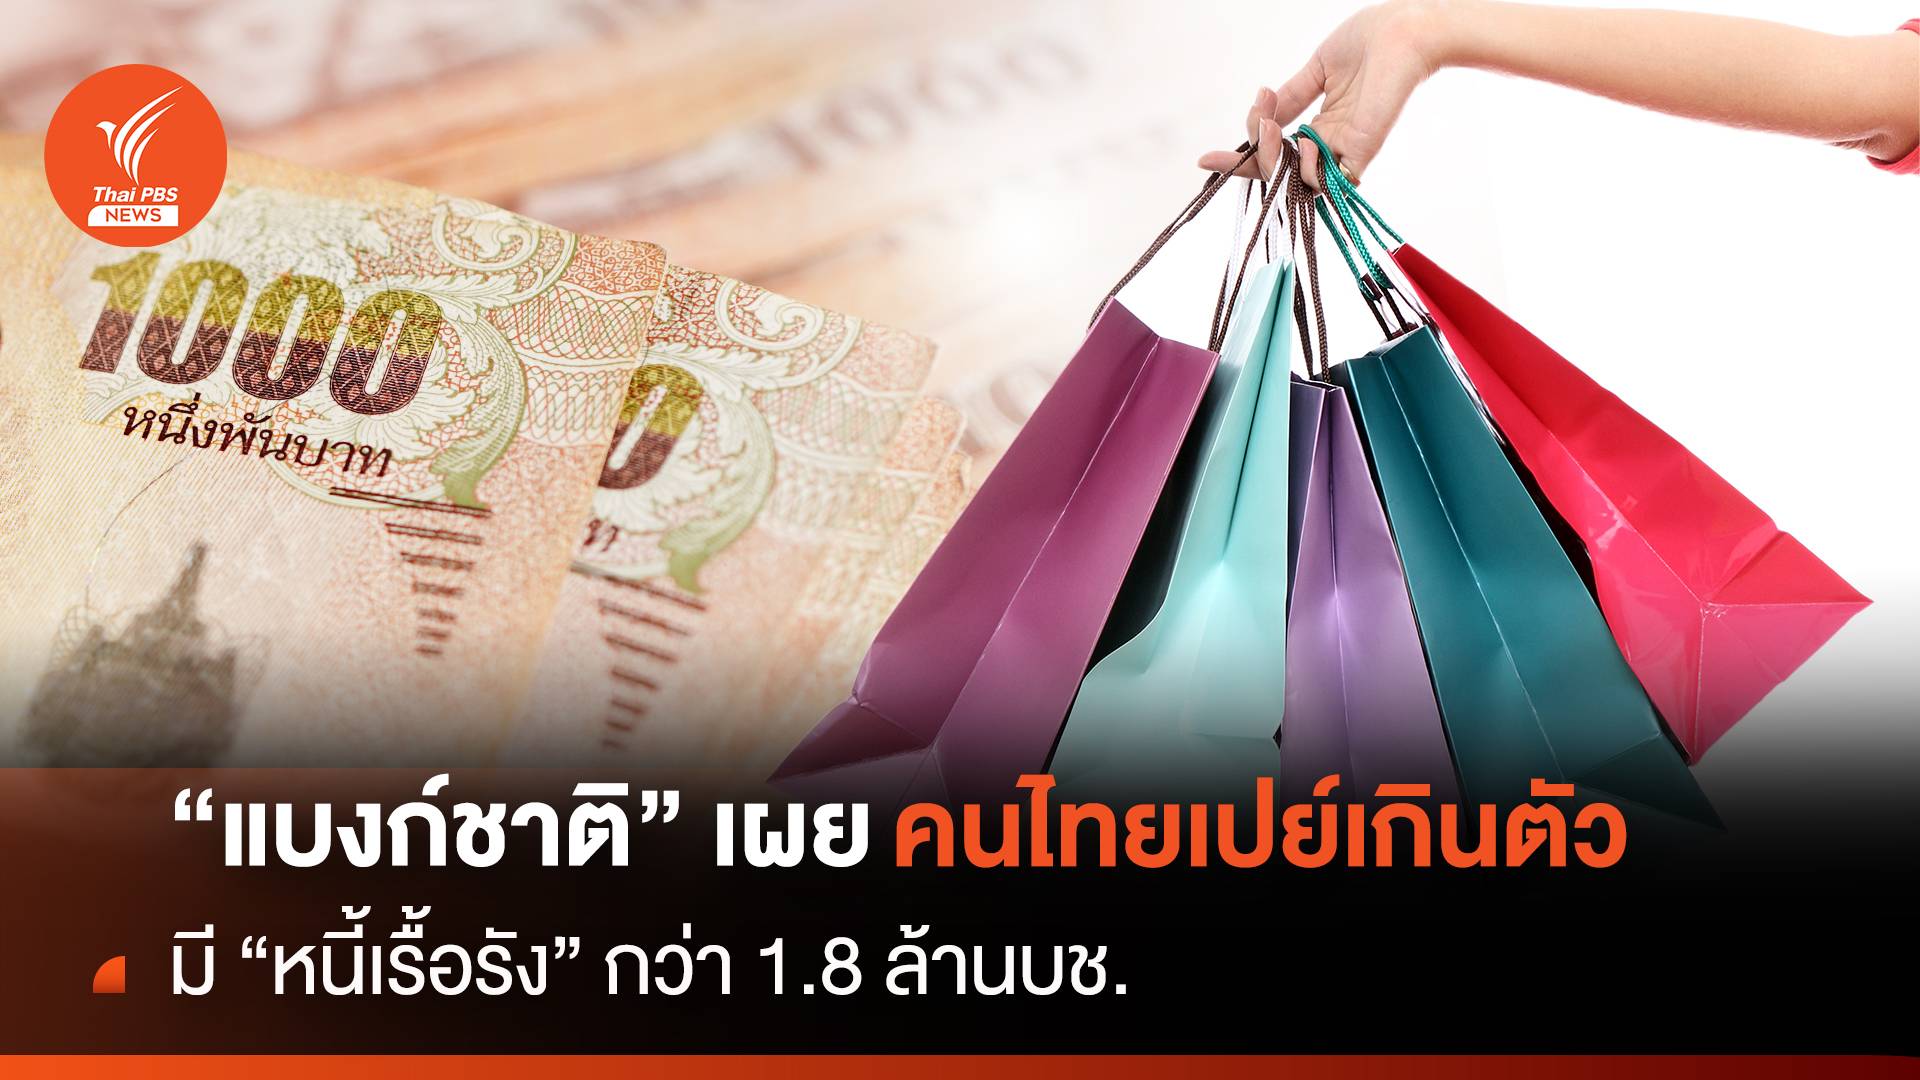 "แบงก์ชาติ" เผย คนไทยเปย์เกินตัว  มี "หนี้เรื้อรัง" กว่า 1.8 ล้านบช.